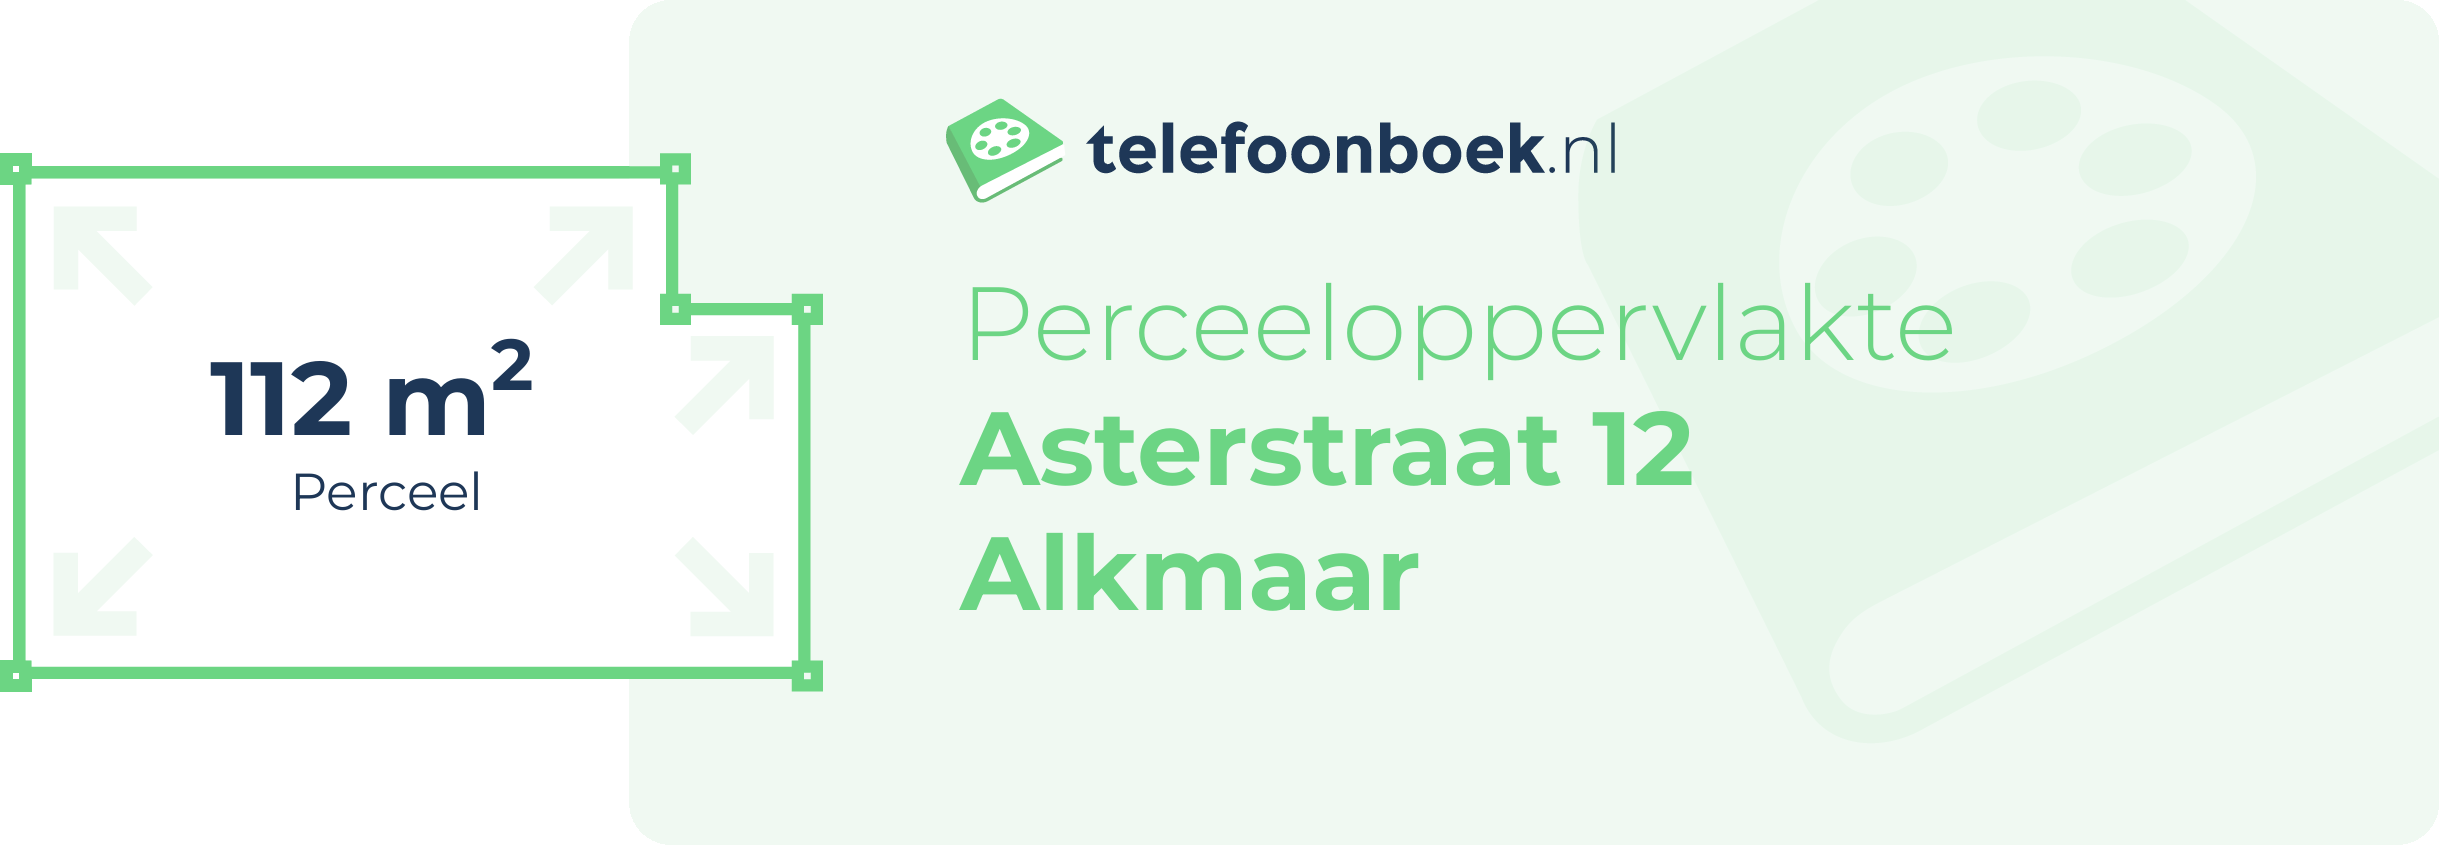 Perceeloppervlakte Asterstraat 12 Alkmaar